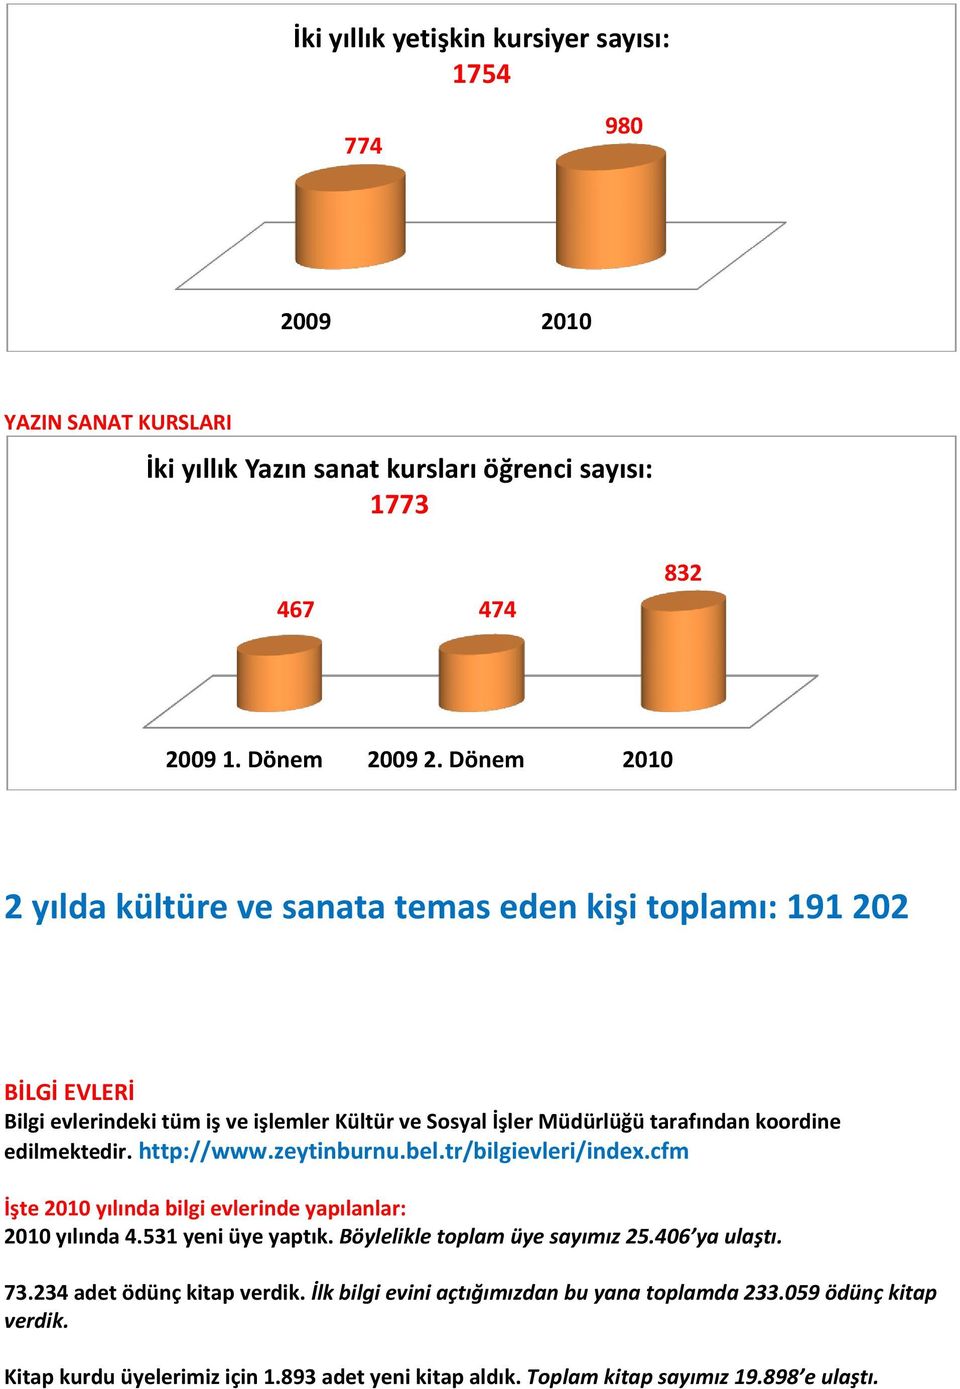 edilmektedir. http://www.zeytinburnu.bel.tr/bilgievleri/index.cfm İşte 2010 yılında bilgi evlerinde yapılanlar: 2010 yılında 4.531 yeni üye yaptık. Böylelikle toplam üye sayımız 25.